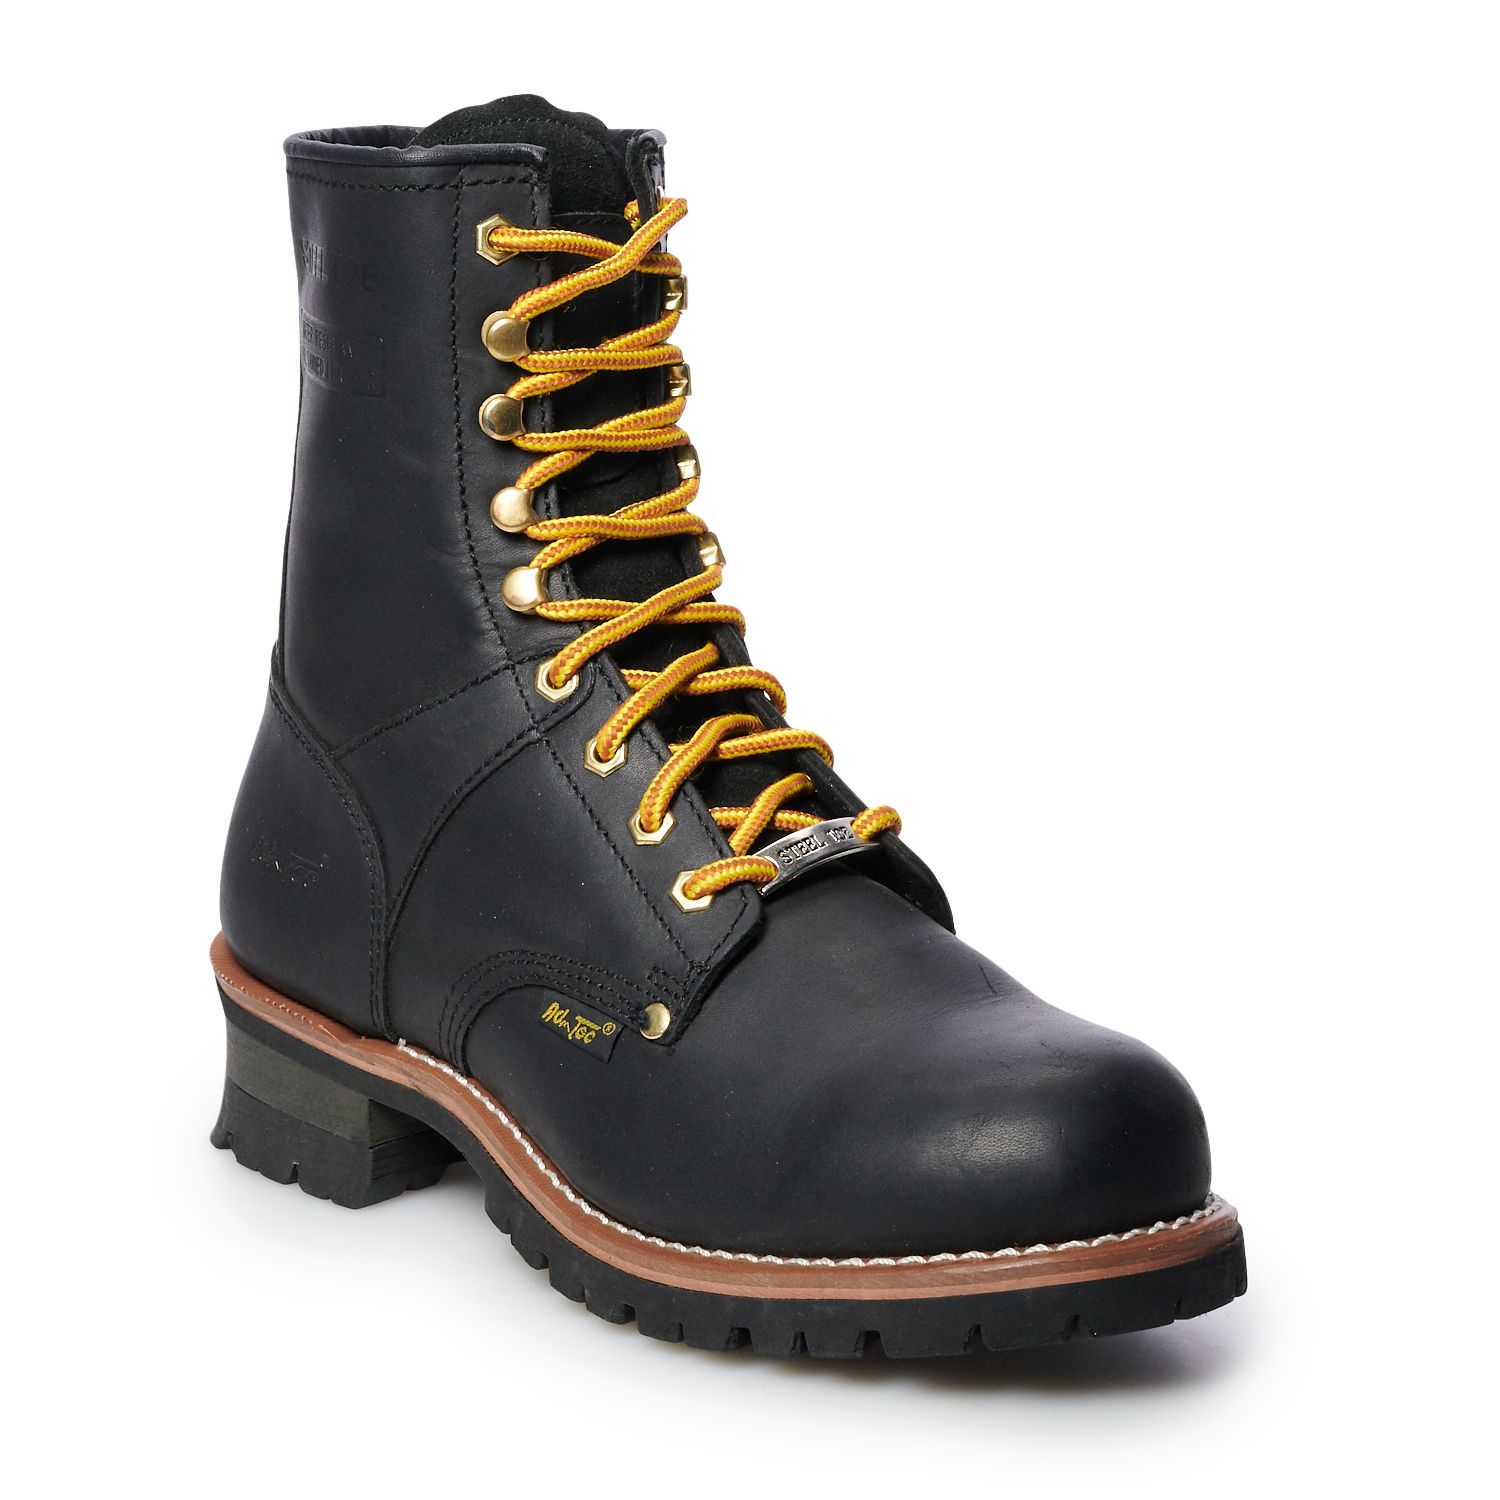 men's water resistant work boots